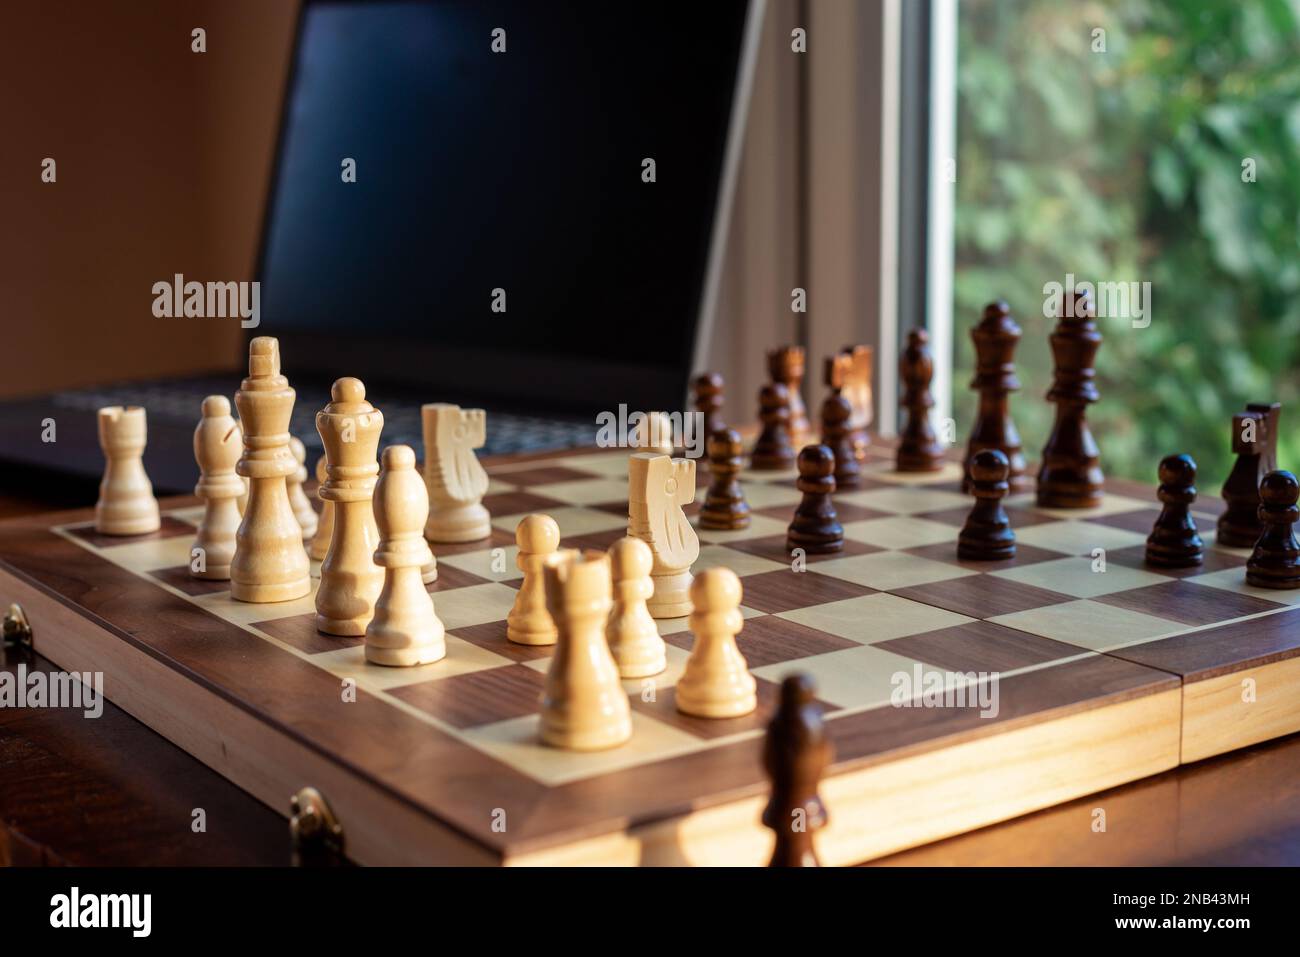 Jugar ajedrez en línea estudiar cómo jugar ajedrez en línea